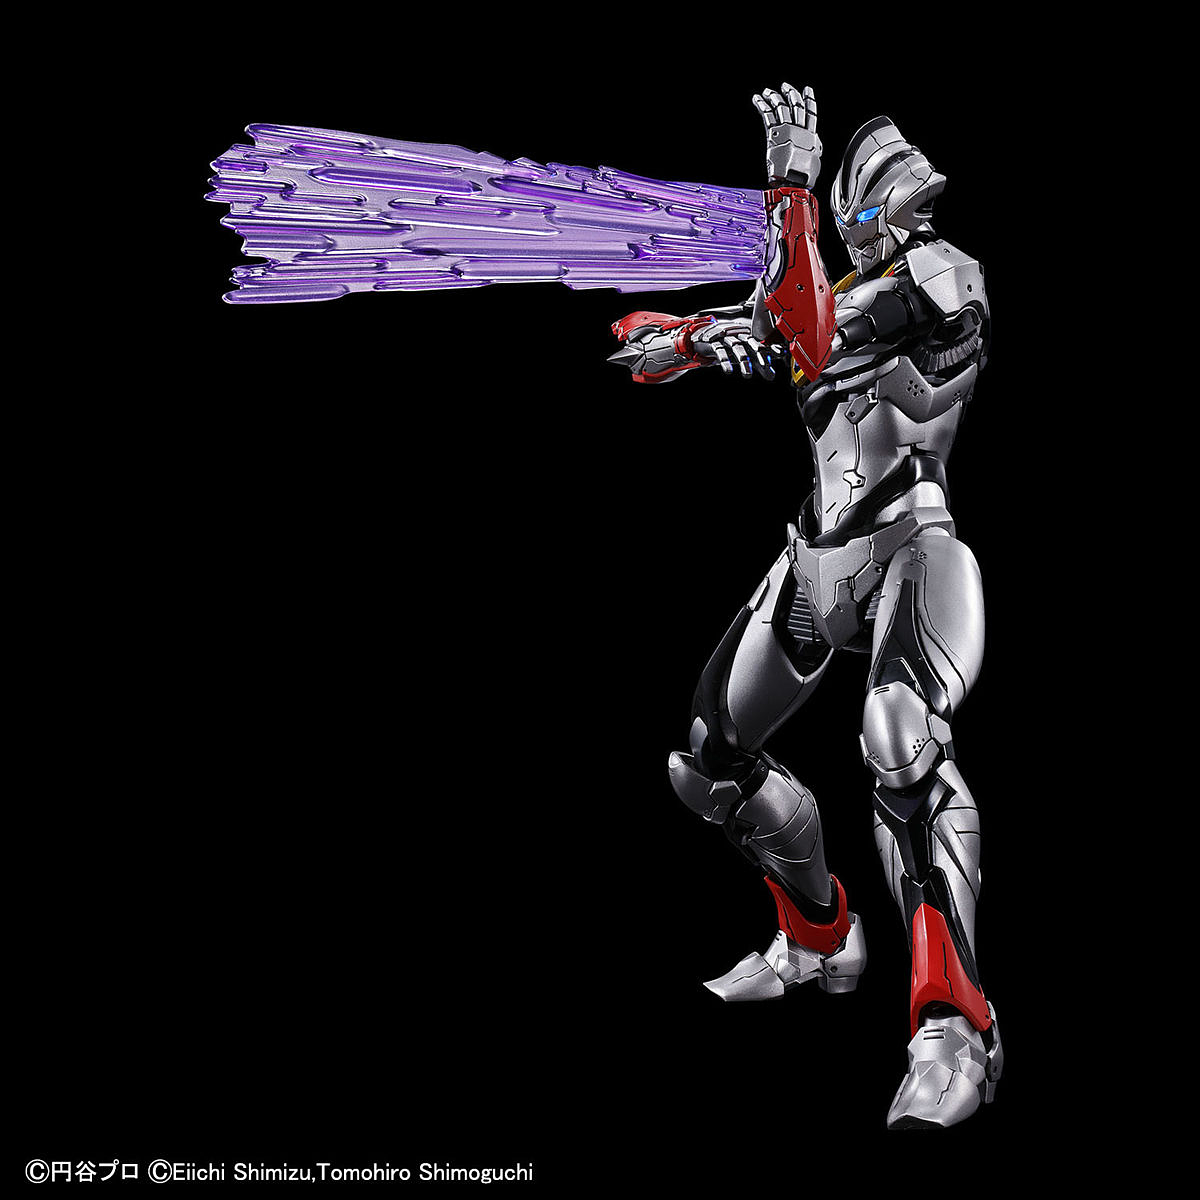 Figure-rise Standard - Ultraman Suit Evil Tiga